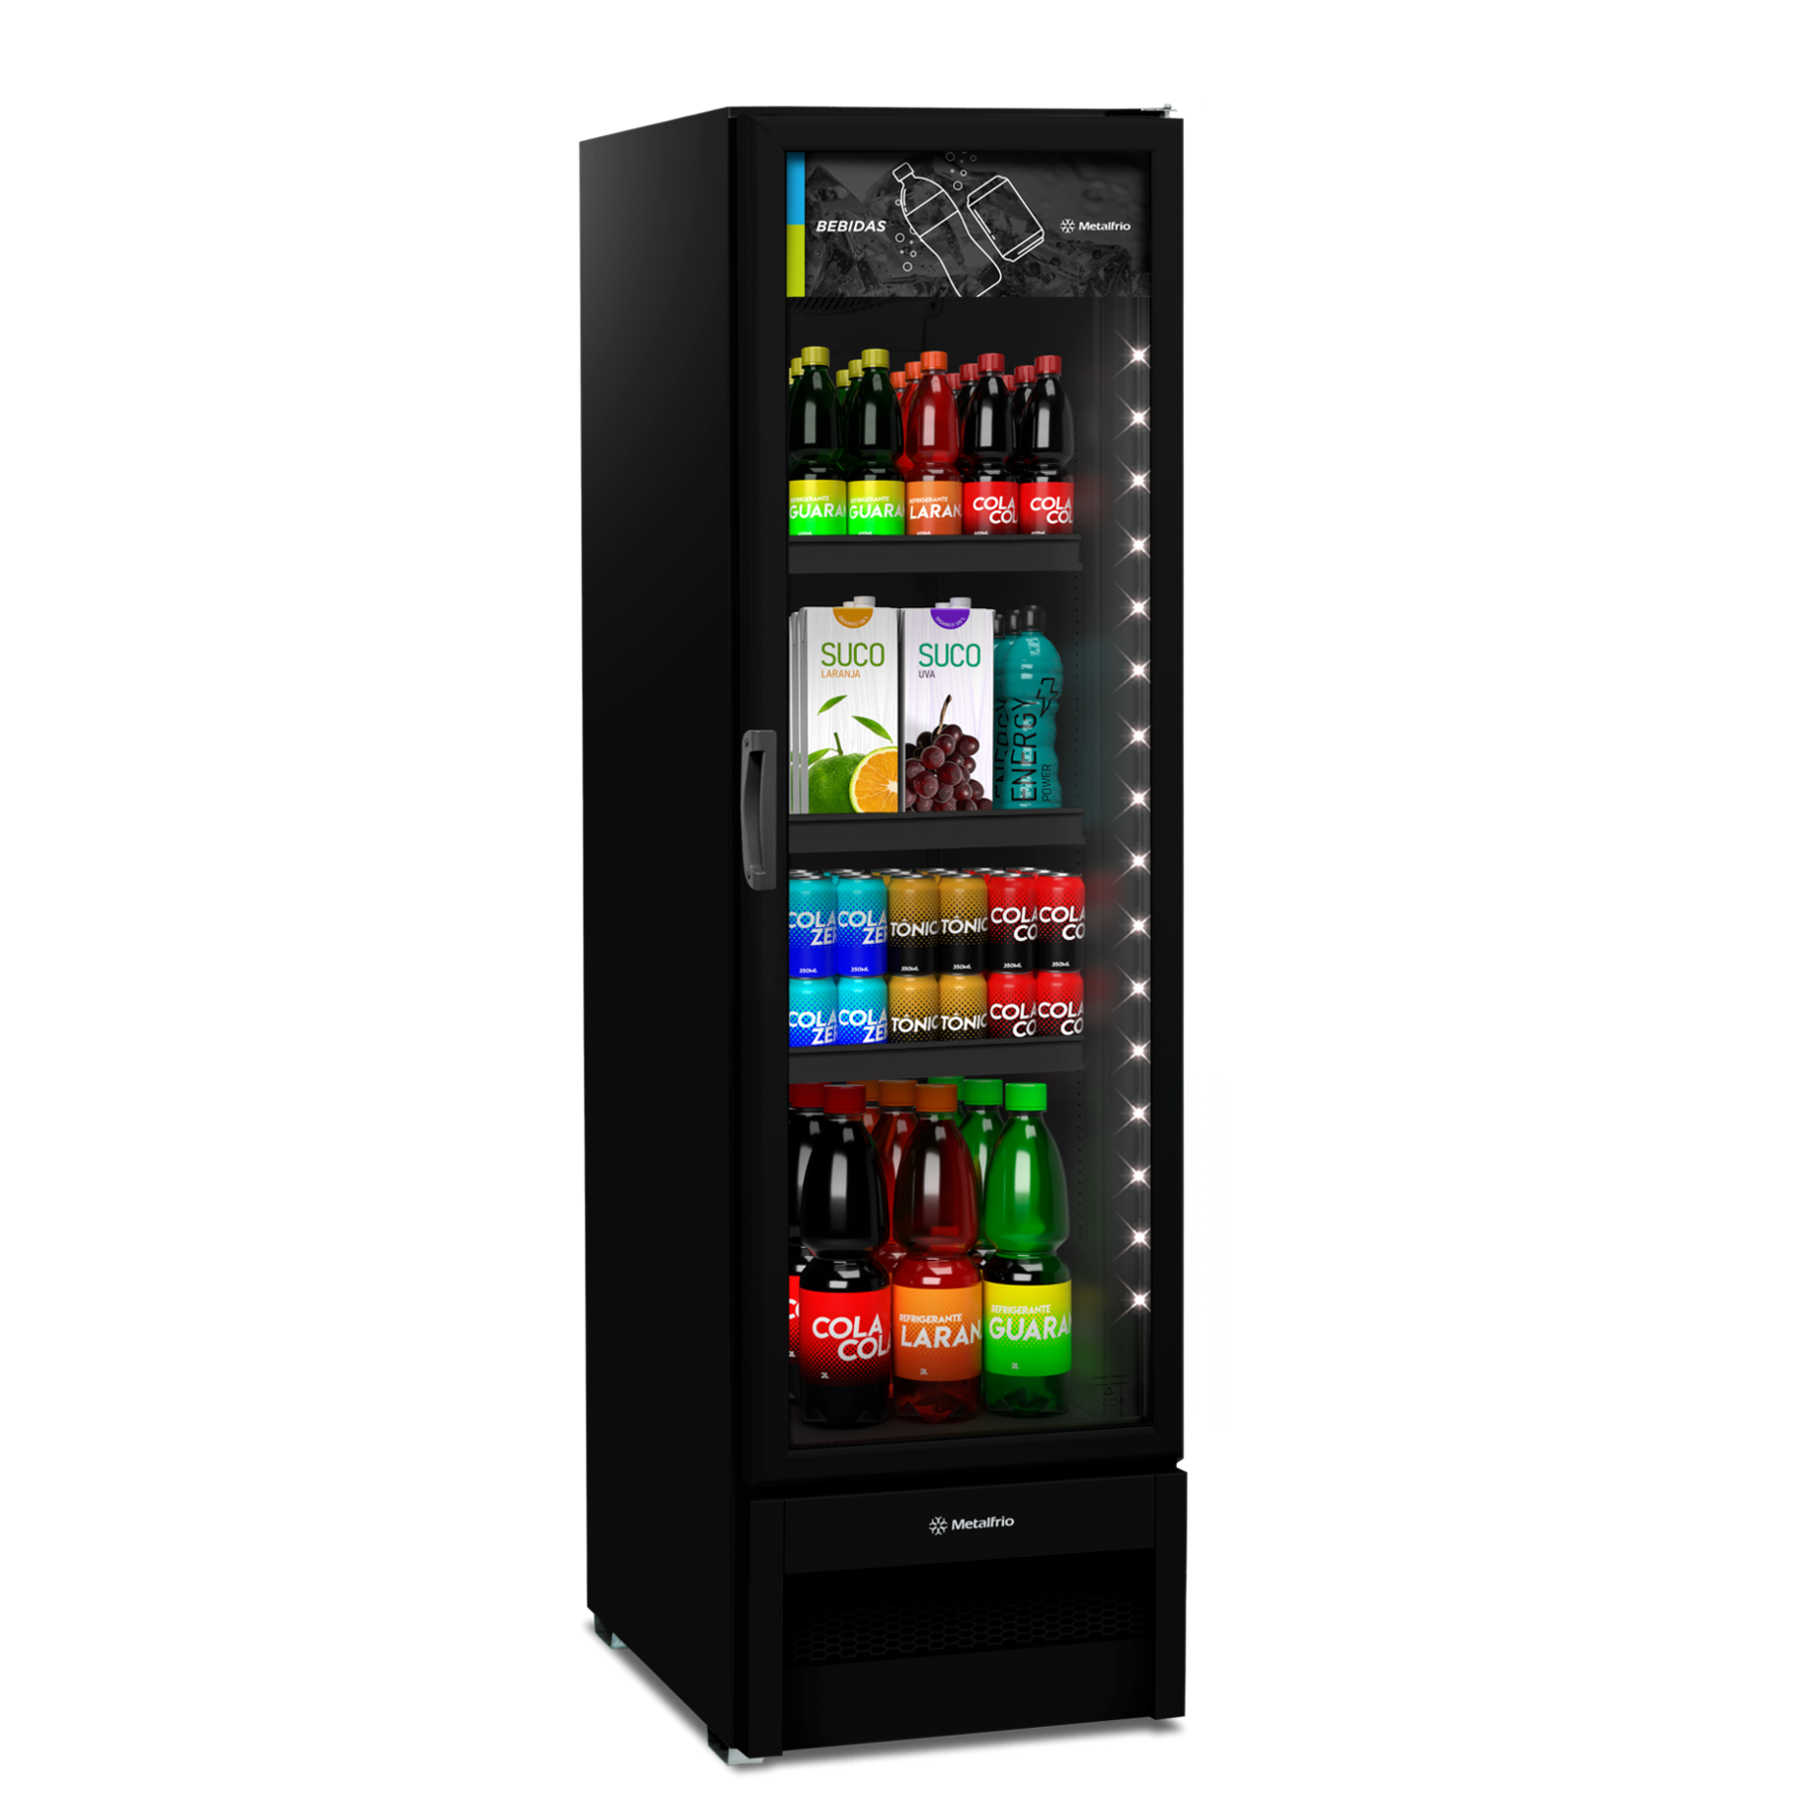 VB28R All Black Metalfrio: Refrigerador Expositor Vertical Slim - Perfeita conservação e exposição para refrigerantes, sucos e águas.